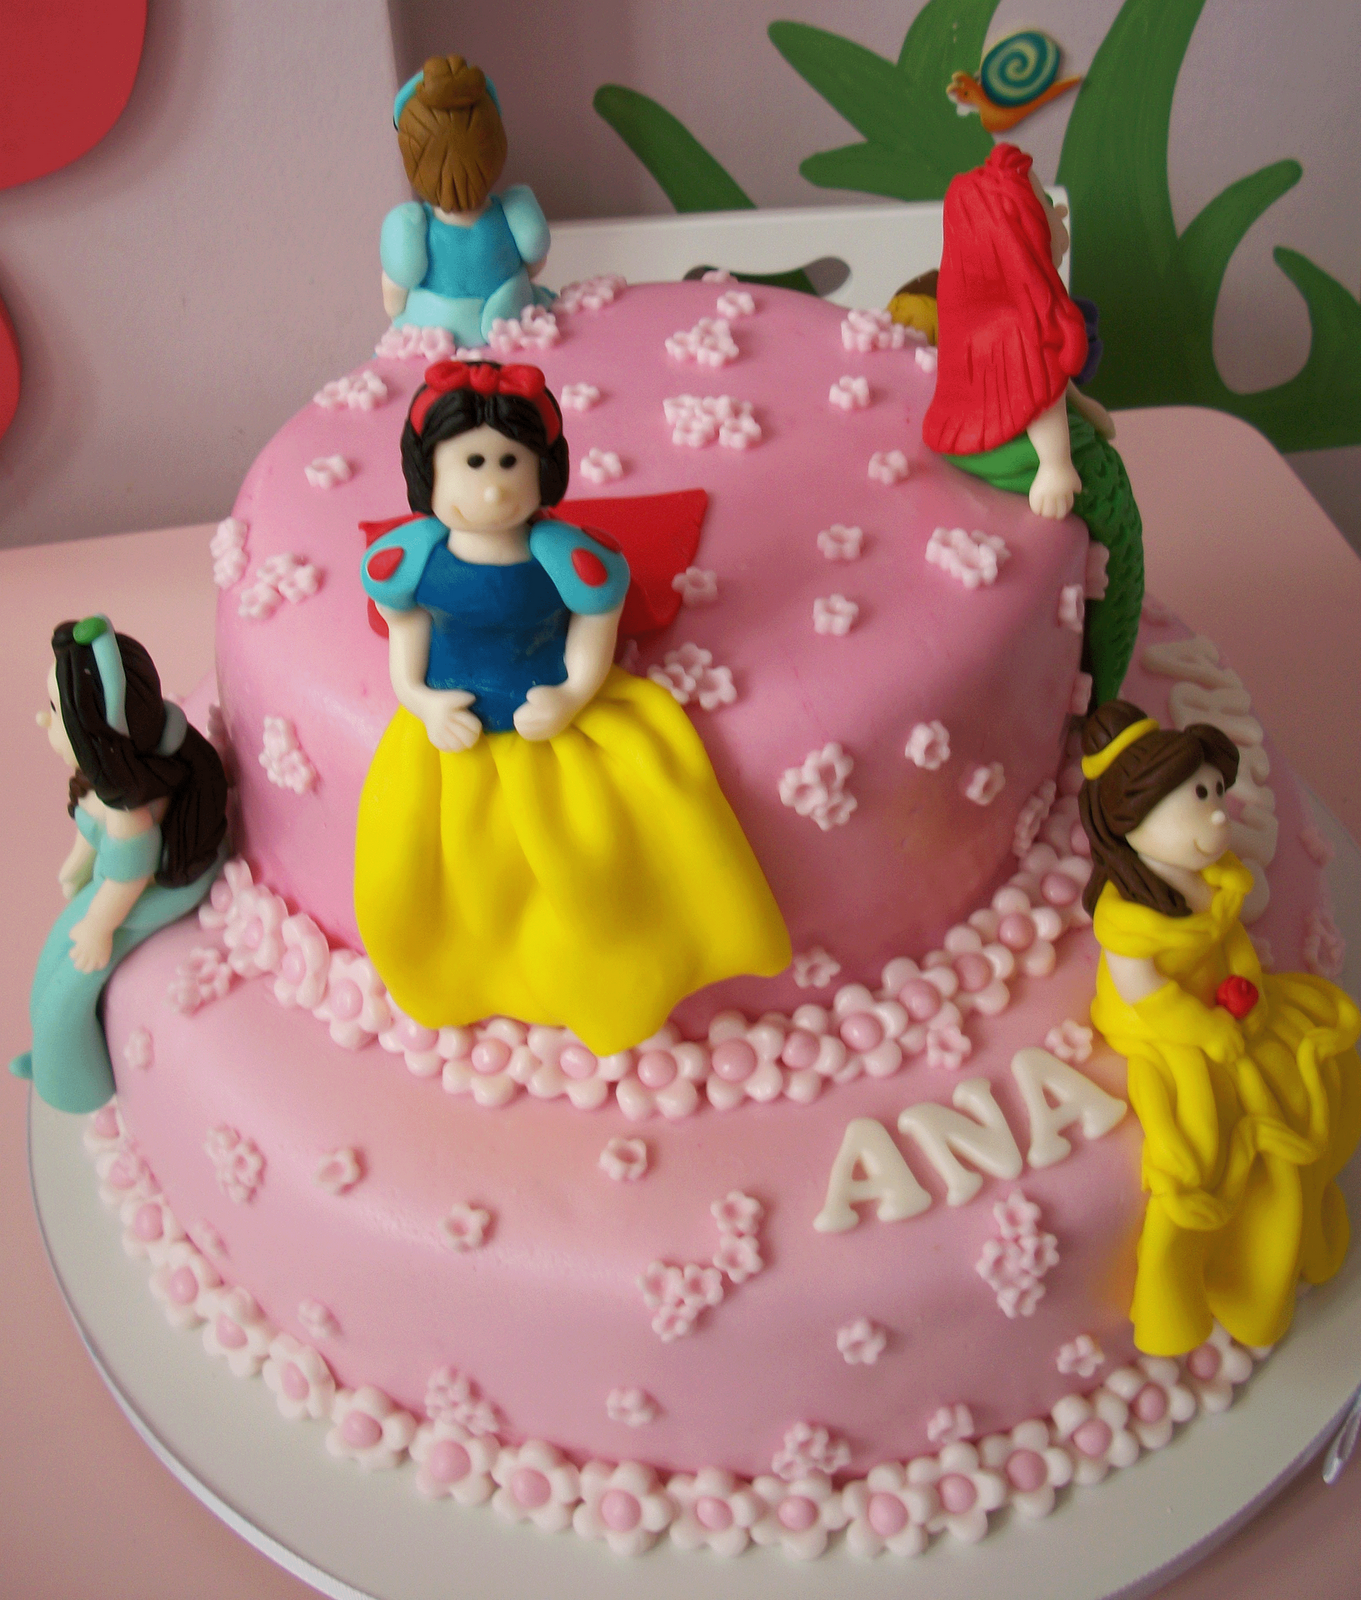 Padaria Sabor & Arte - Mais um bolo saindo para Princesa Dudinha !! 6 anos  juntos neste dia de festa!!! 🎂✨🍾🥂🎉🎁🎈#bolo #princesas #disney #love  #Sabor #Arte